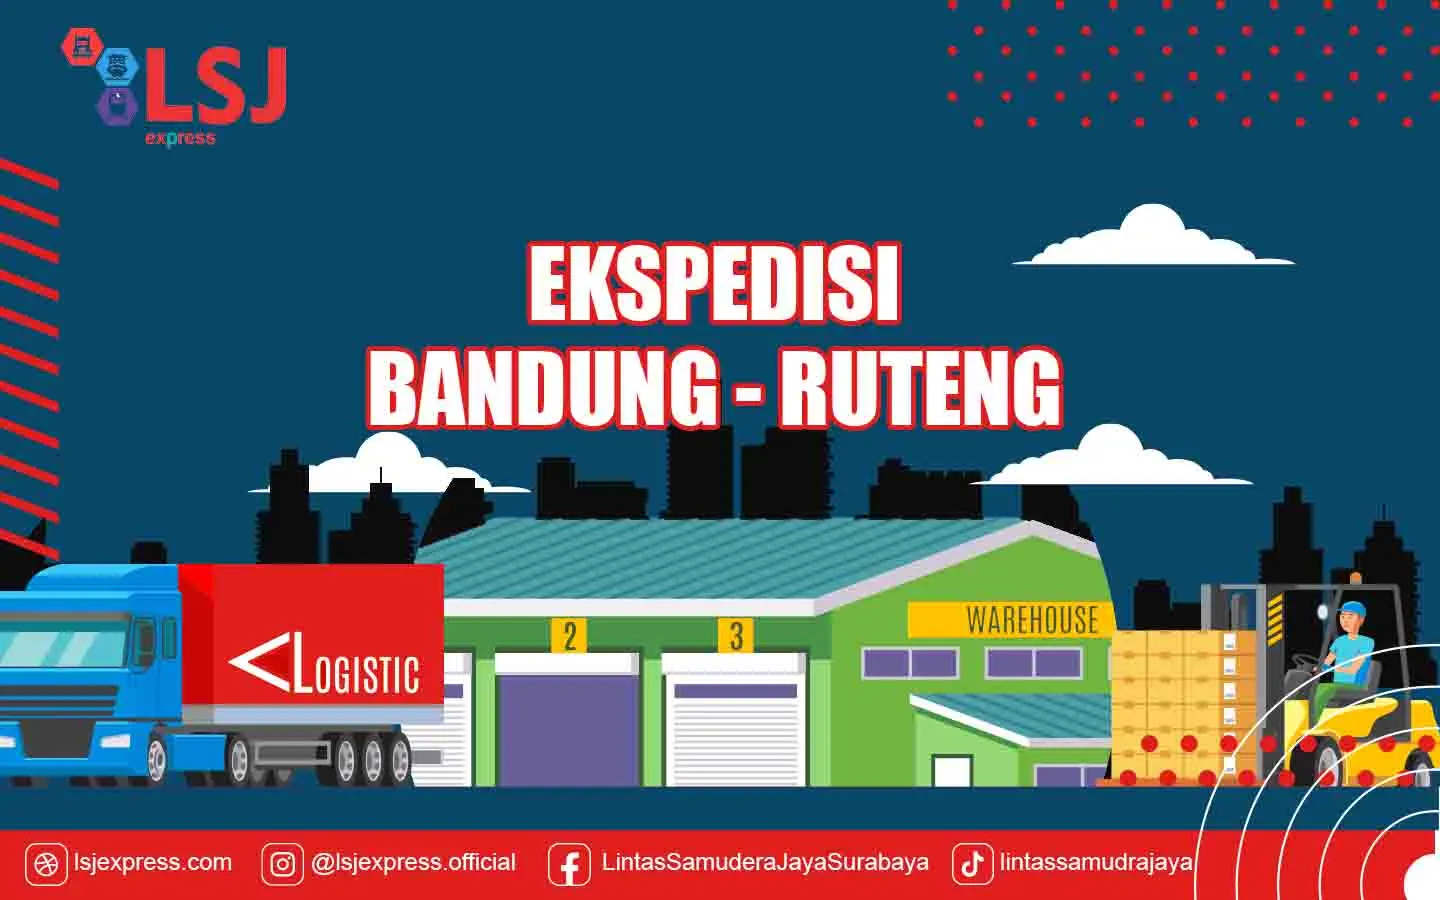 Ekspedisi Bandung Ruteng